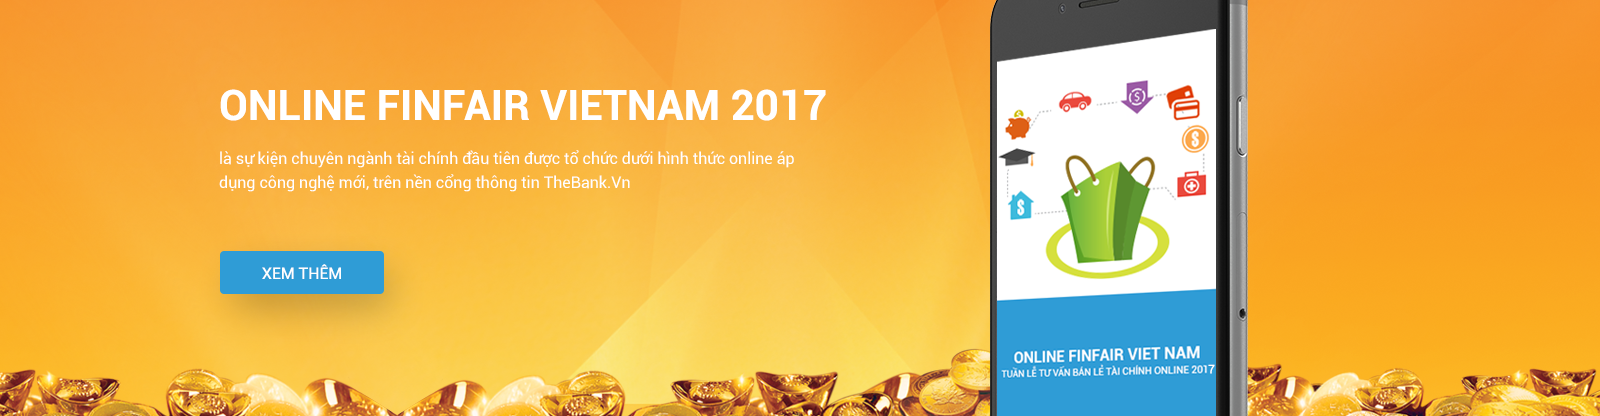 Sự kiện tài chính mới nhất sắp diễn ra vào tháng 1 năm 2017 Finfair-vietnam-2017-thebank.vn